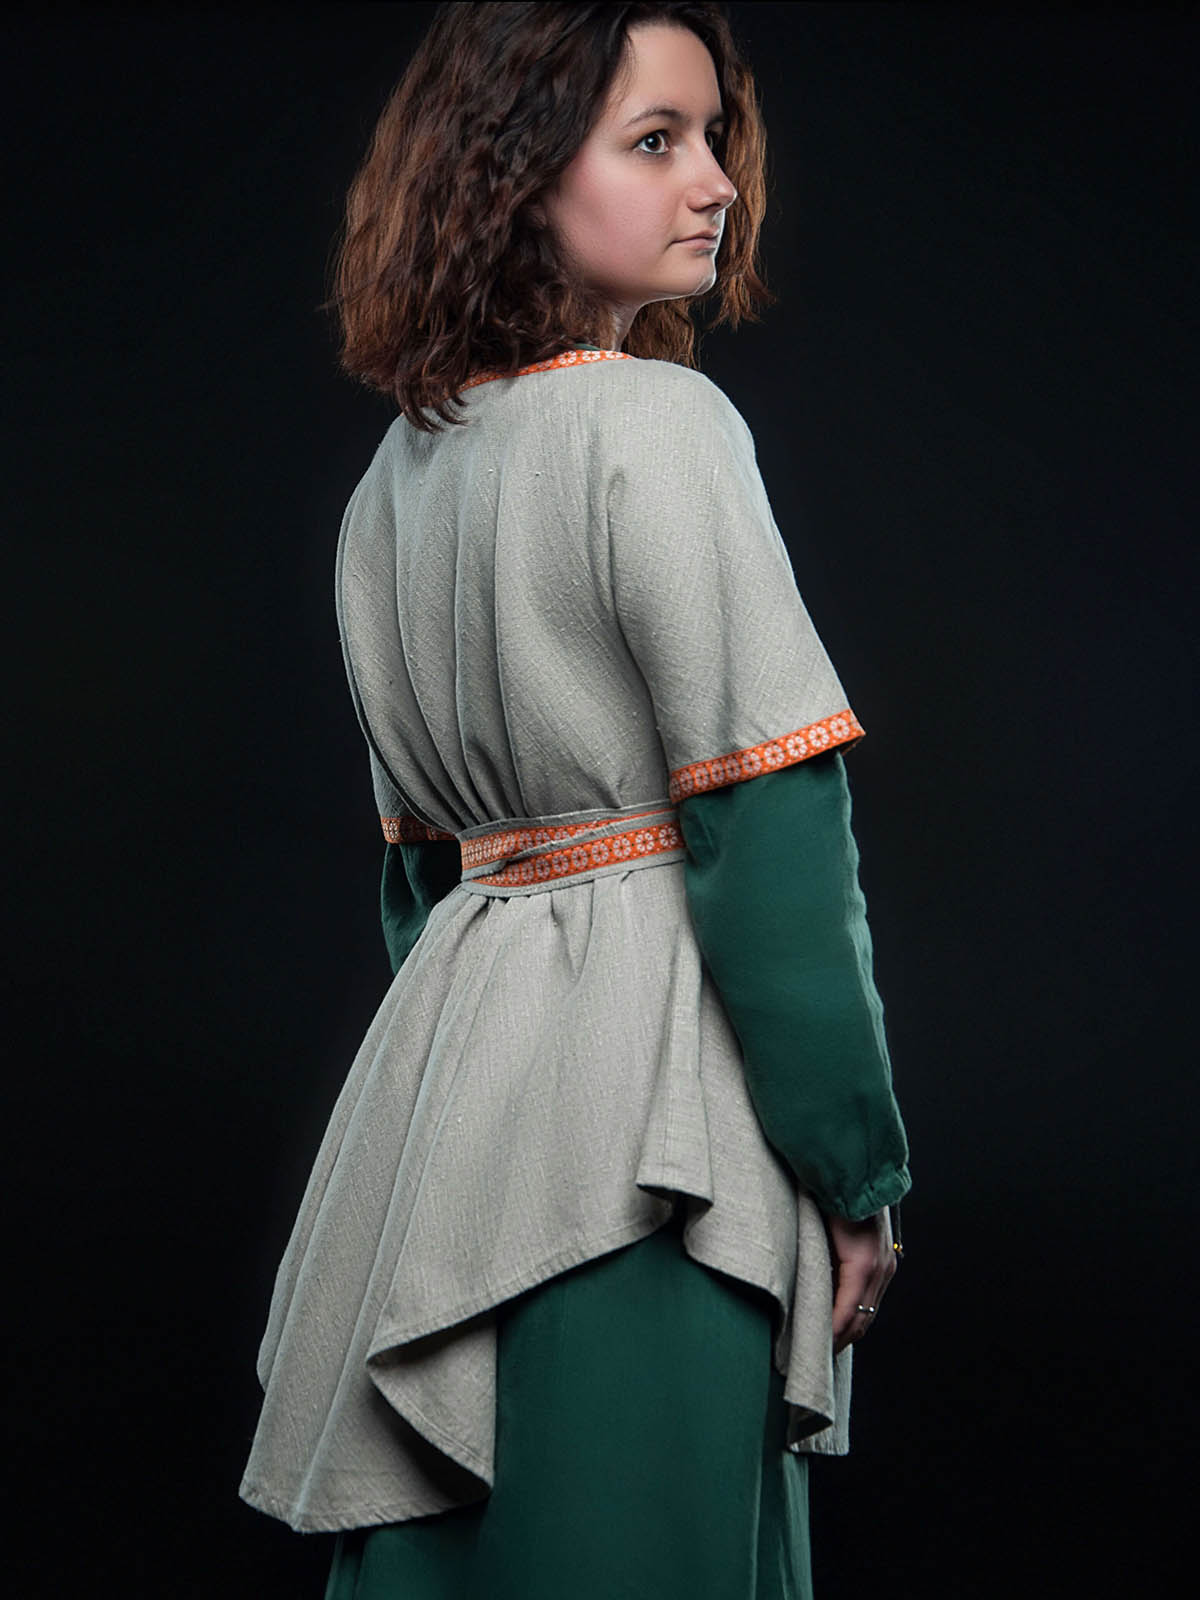 medieval peasant clothing